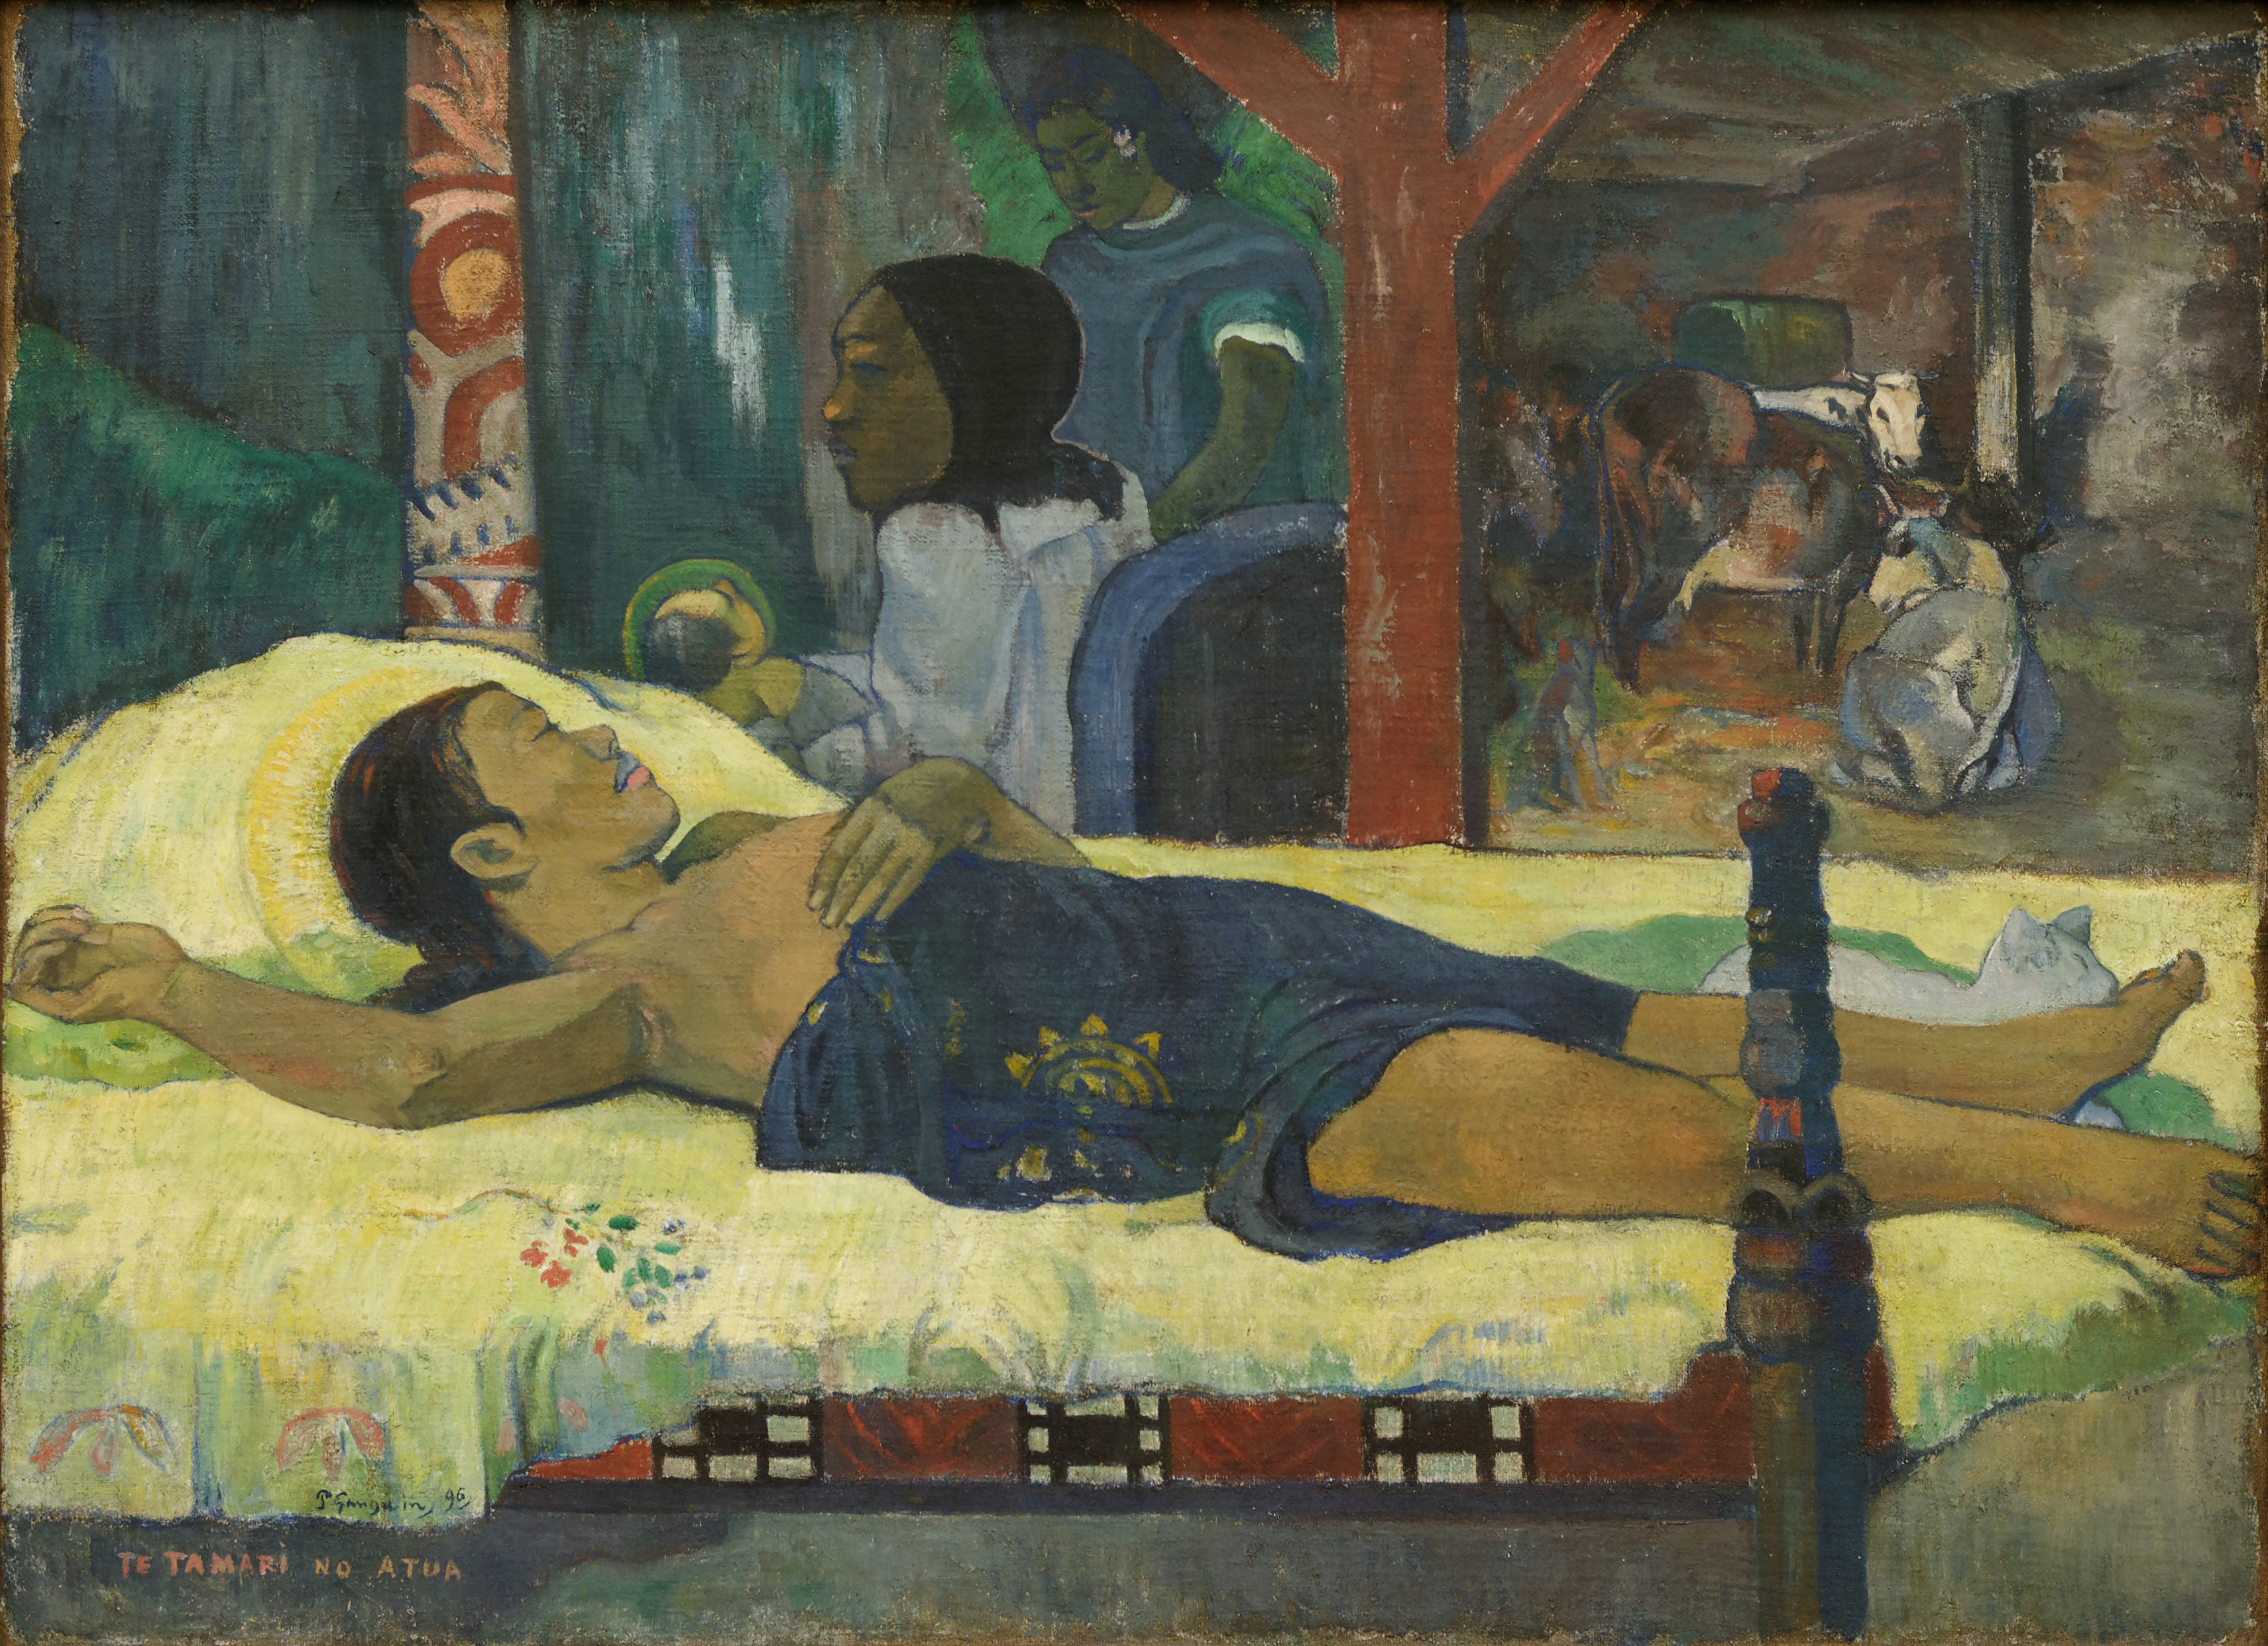 Η γέννηση του Χριστού (Te Tamari No Atua) by Paul Gauguin - 1896 - 94 x 129 εκ. 